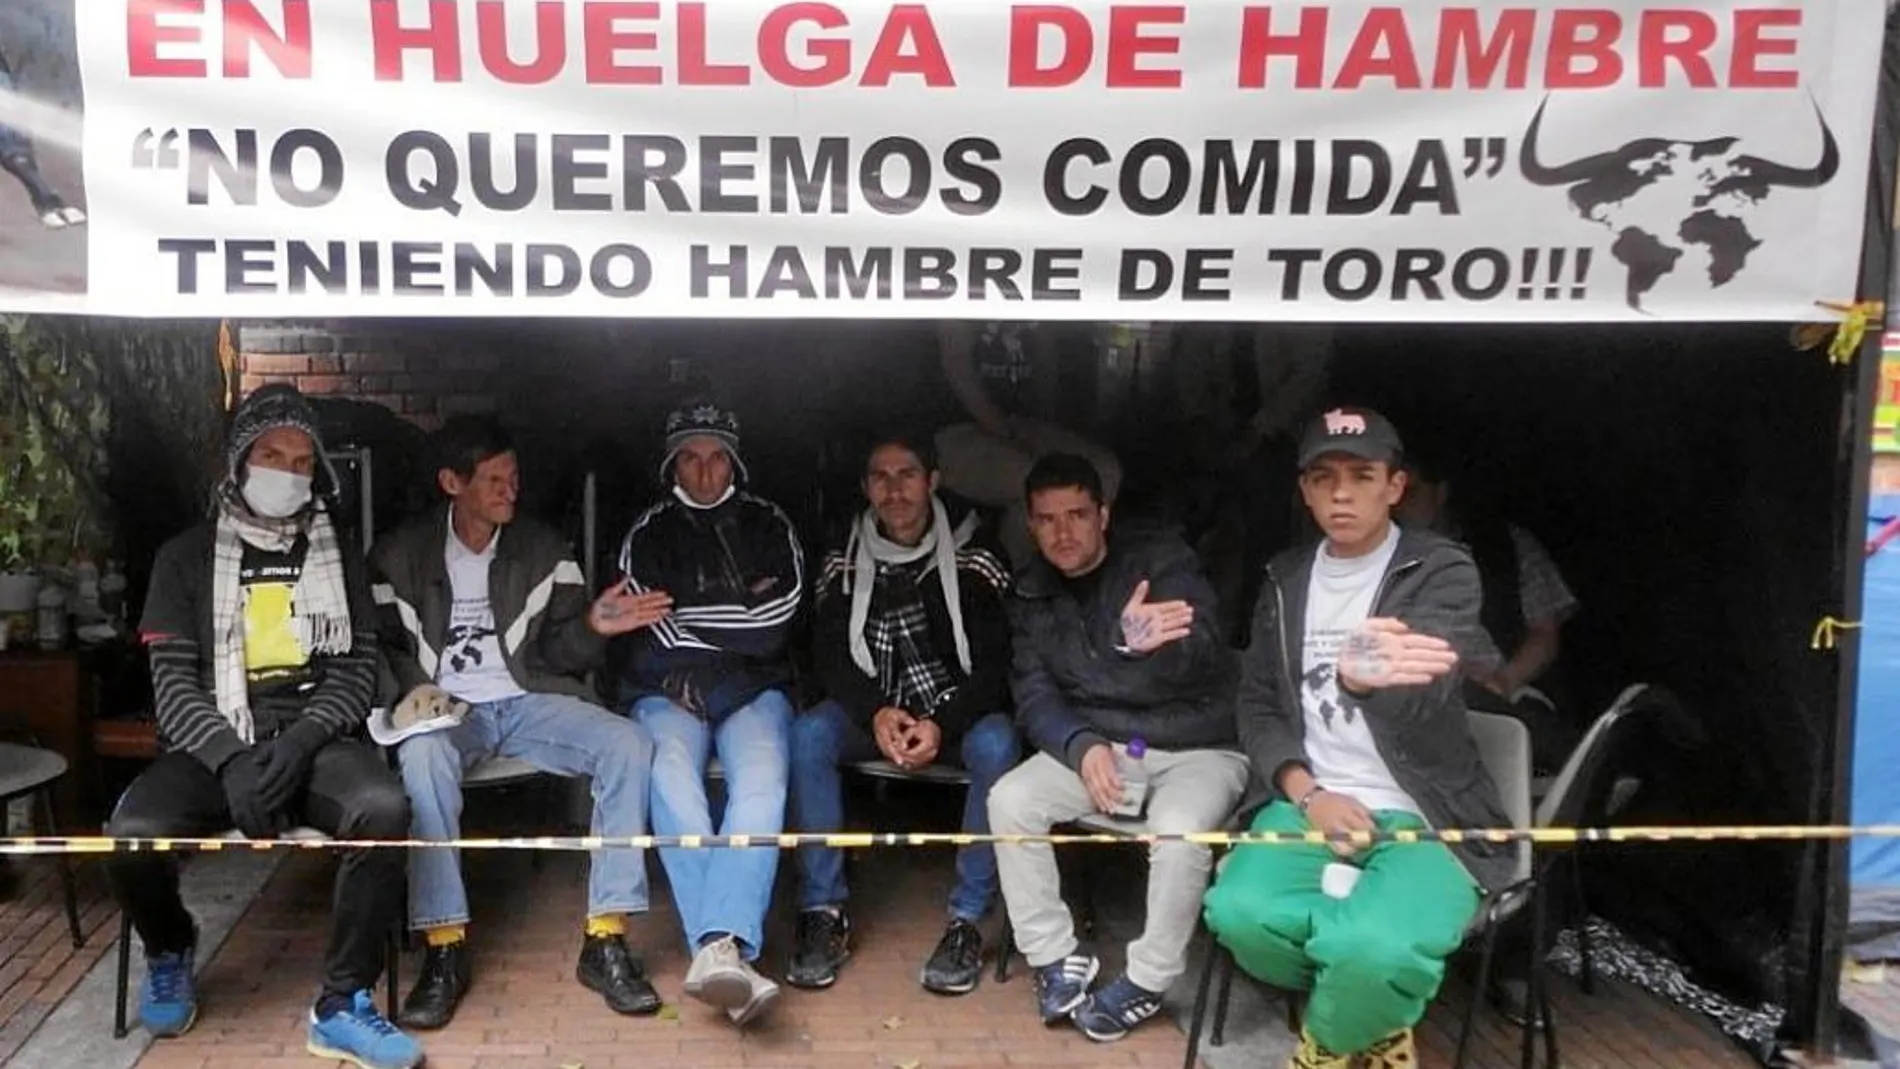 Huelga de hambre de los novilleros colombianos en la plaza de toros de Santa María de Bogotá, 2014